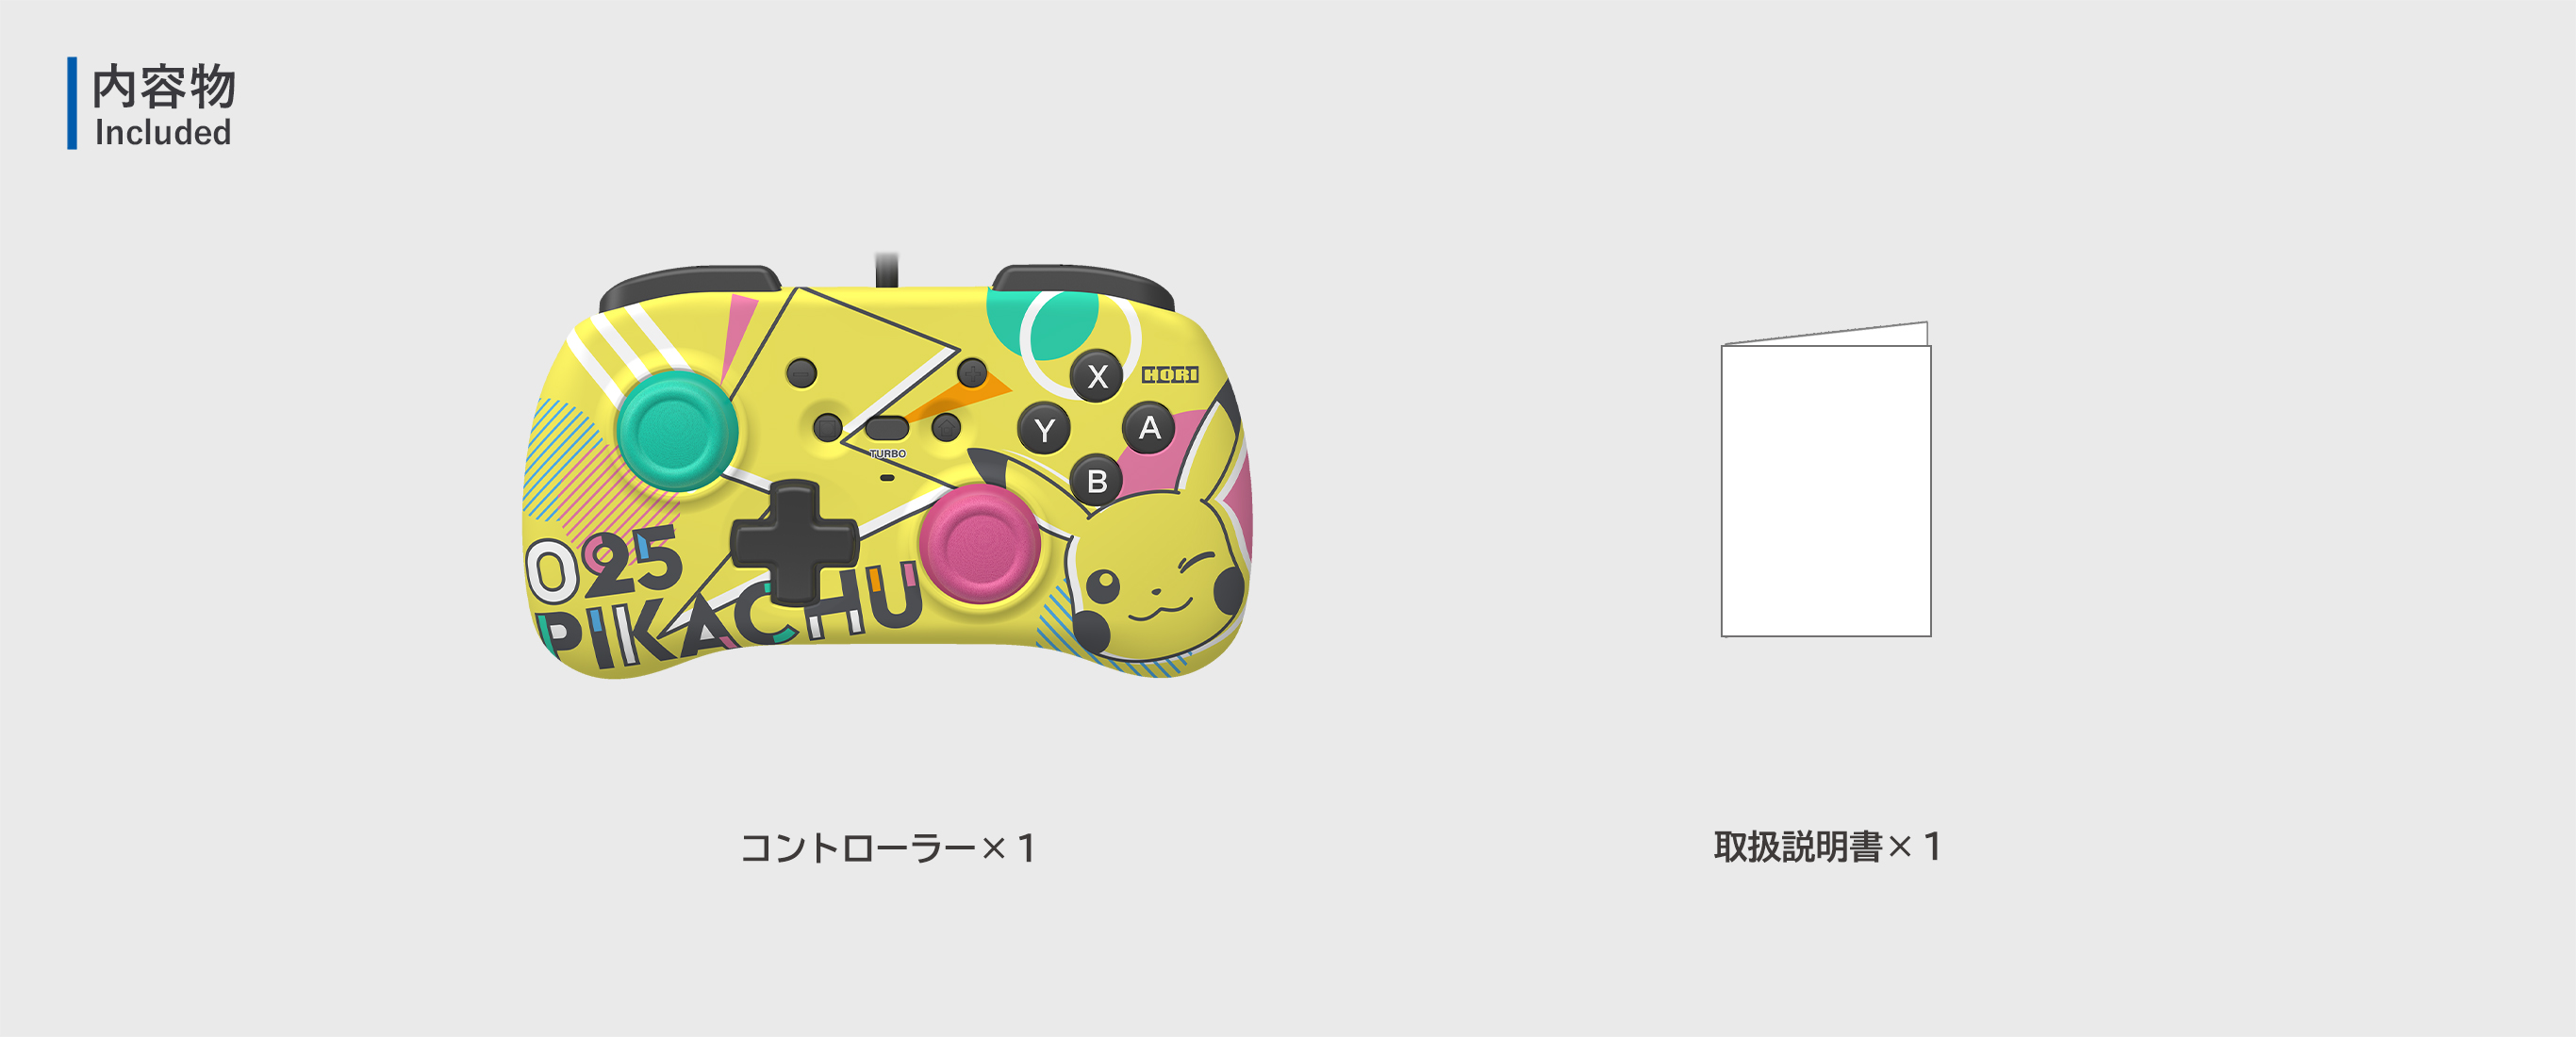 株式会社 HORI | ホリパッド ミニ for Nintendo Switch ピカチュウ